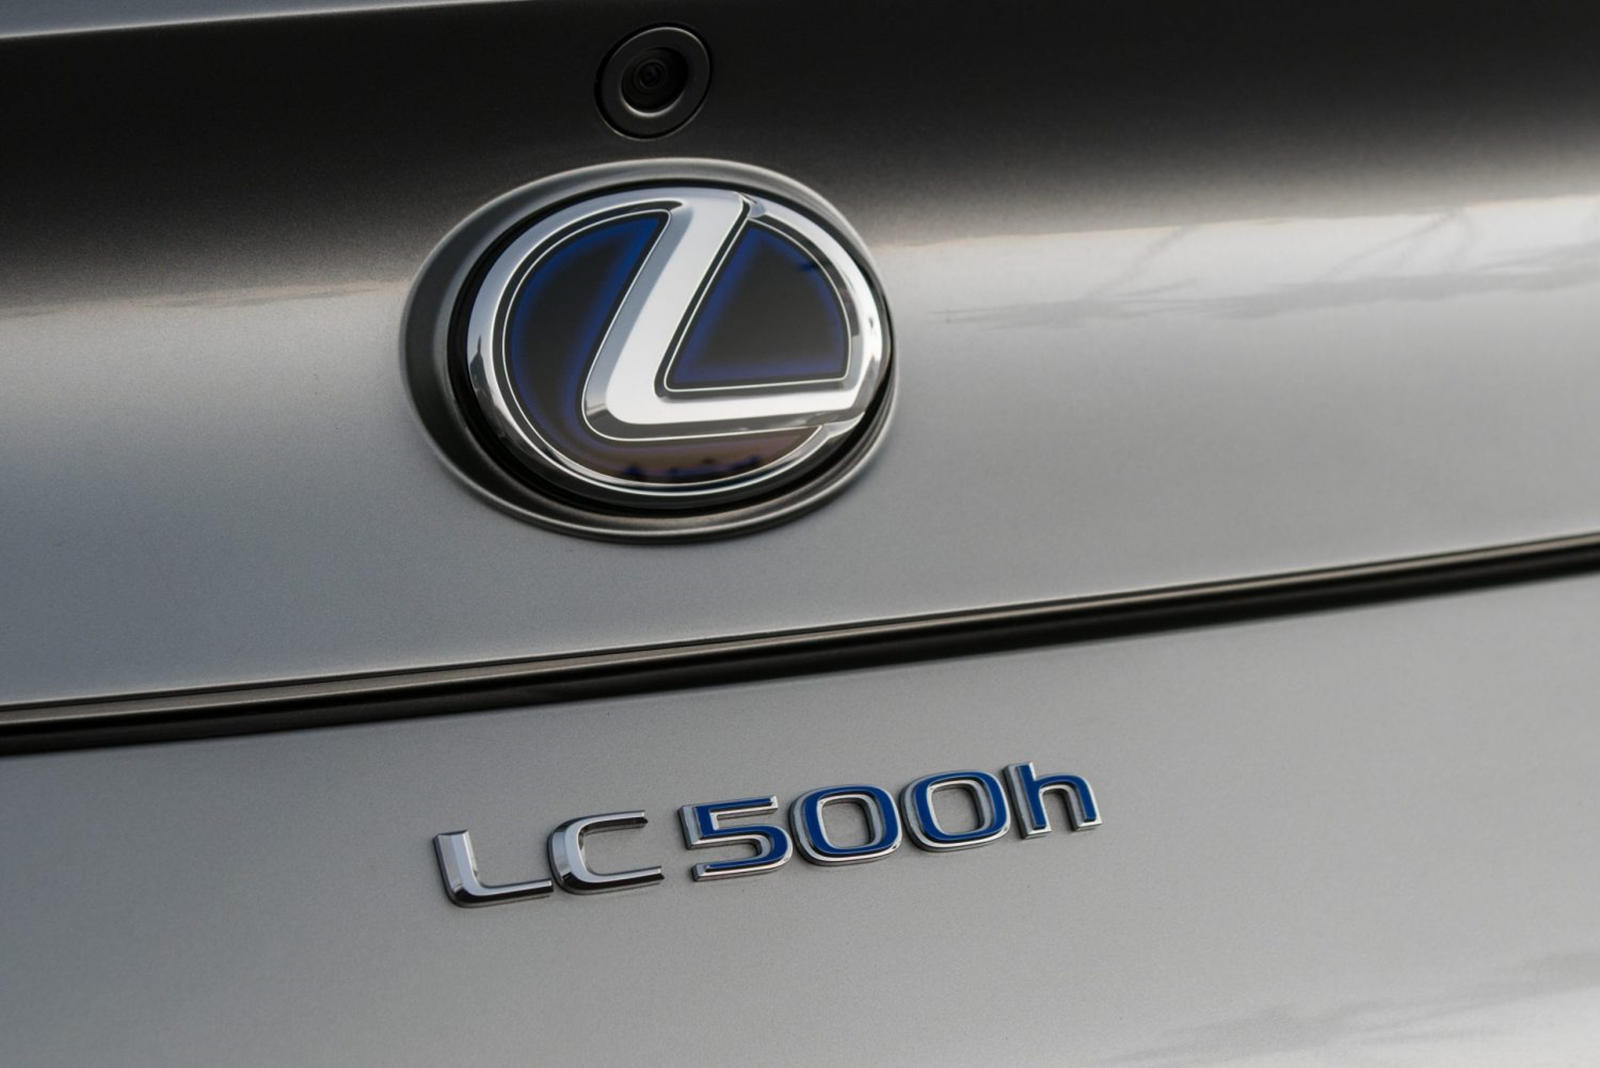 Первый кабриолет 2021 Lexus LC 500 уже был продан на аукционе на благотворительные цели, что принесло 2 миллиона долларов для Boys&Girls Club of America и благотворительному фонду Bob Woodruff Foundation. Но теперь Lexus анонсировал для 2021 модельно